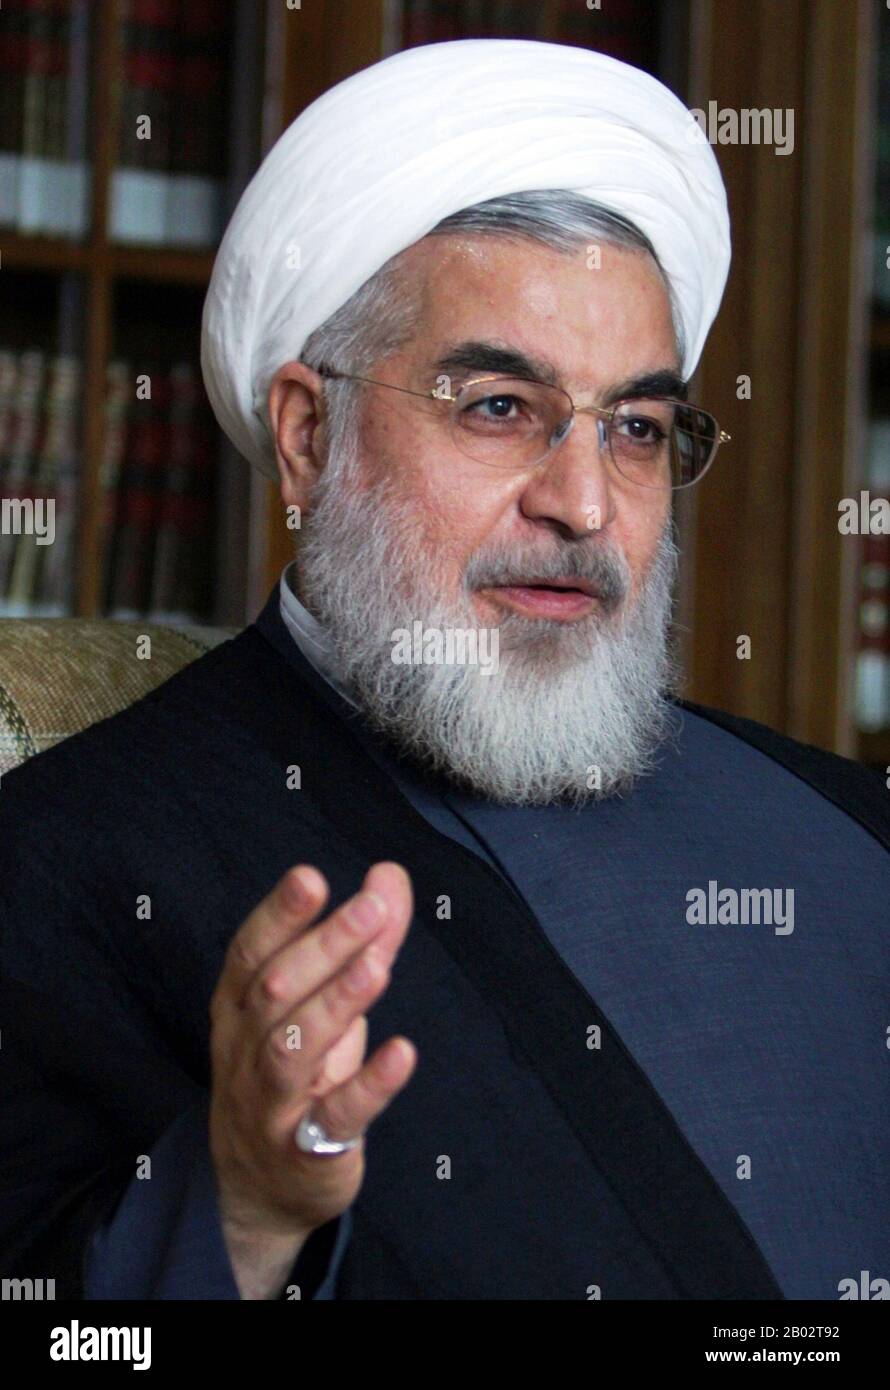 Hassan Rouhani est le septième président de l'Iran, en fonction depuis 2013. Il est également un ancien législateur, universitaire et diplomate. Il est membre de l'Assemblée d'experts de l'Iran depuis 1999, membre du Conseil D'Opportunisme depuis 1991 et membre du Conseil suprême de sécurité nationale depuis 1989. Banque D'Images